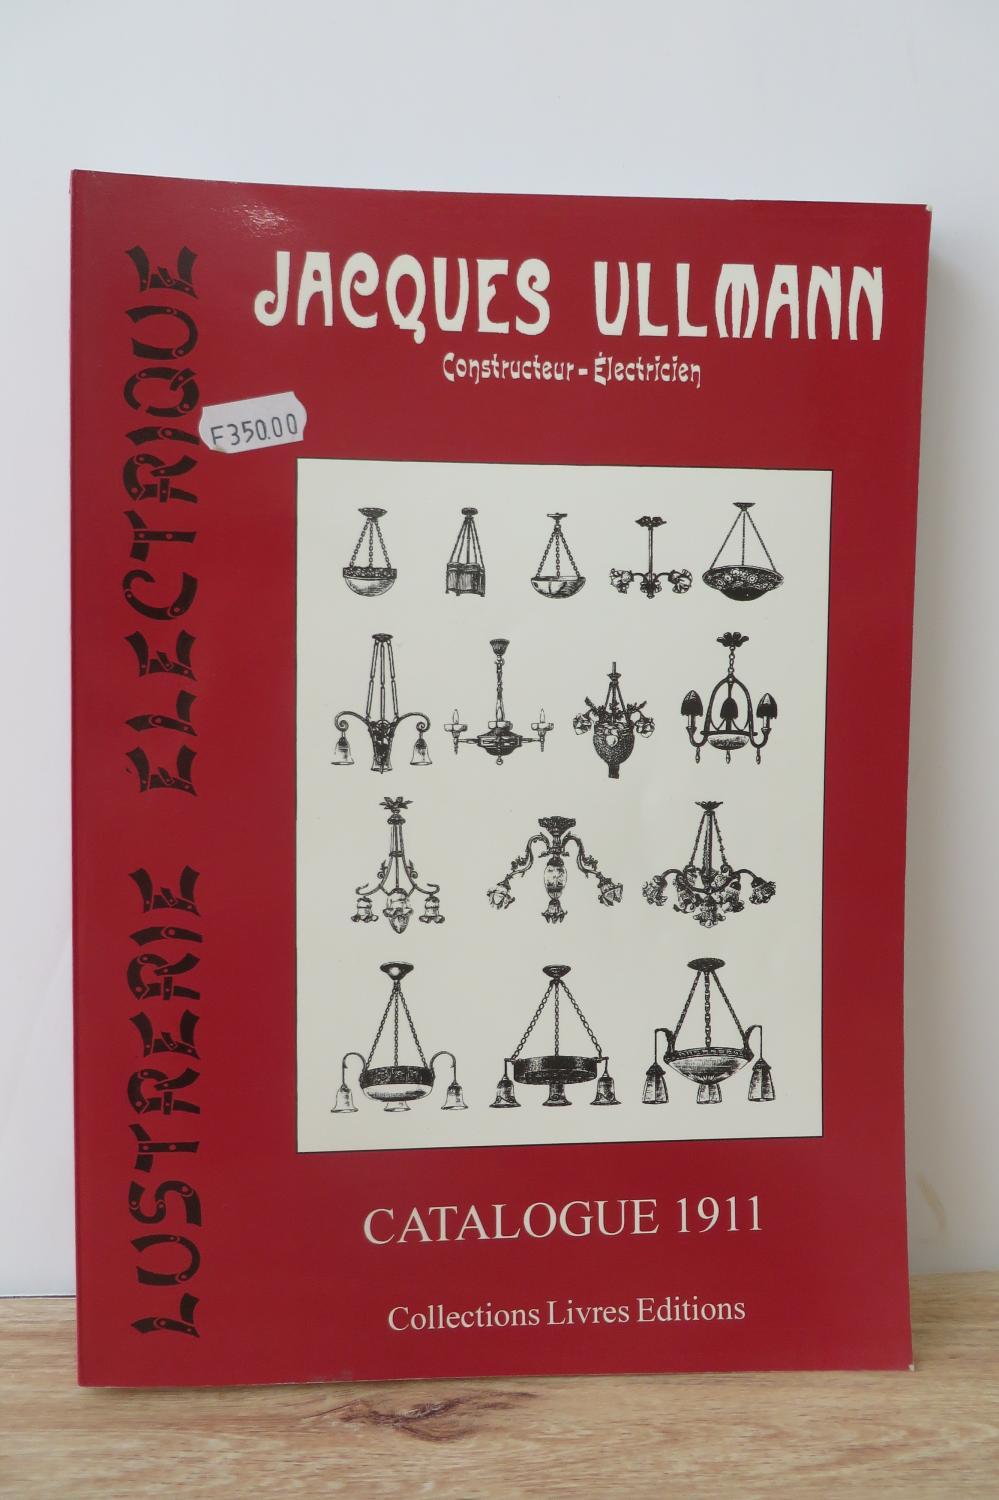 Lustrerie Electrique: Jacques Ullmann, Constructeur-Electricien: Catalogue, 1911